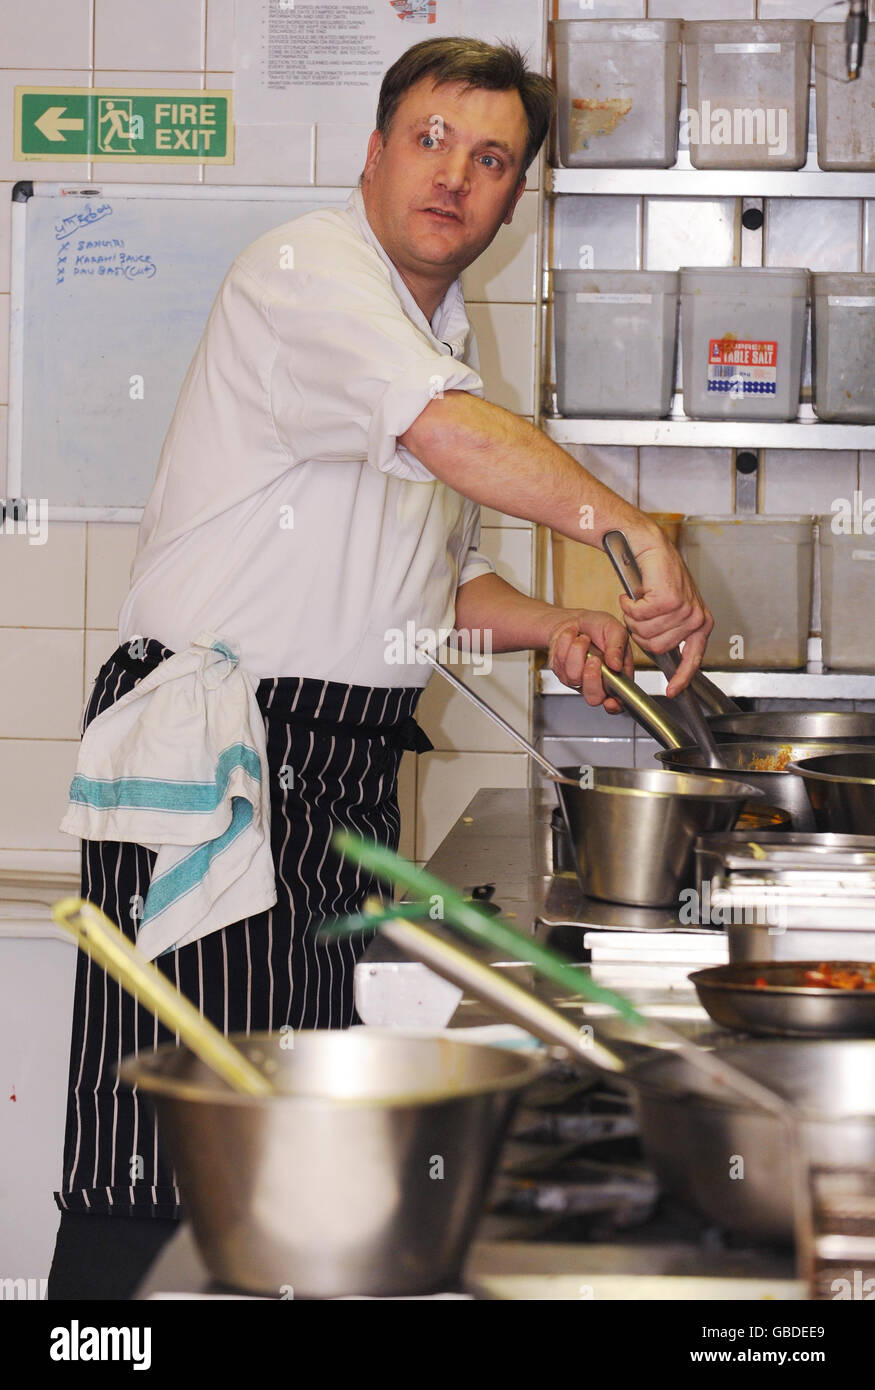 Der Schulsekretär Ed Balls in der Küche des Cinnamon Club Restaurants in Westminster, im Zentrum von London, bereitet ein Curry aus einem Rezeptbuch zu, das im Rahmen einer Regierungsangelegenheit, die Kinder zum Kochen anregt, an die Schüler des Landes verteilt werden soll. Stockfoto